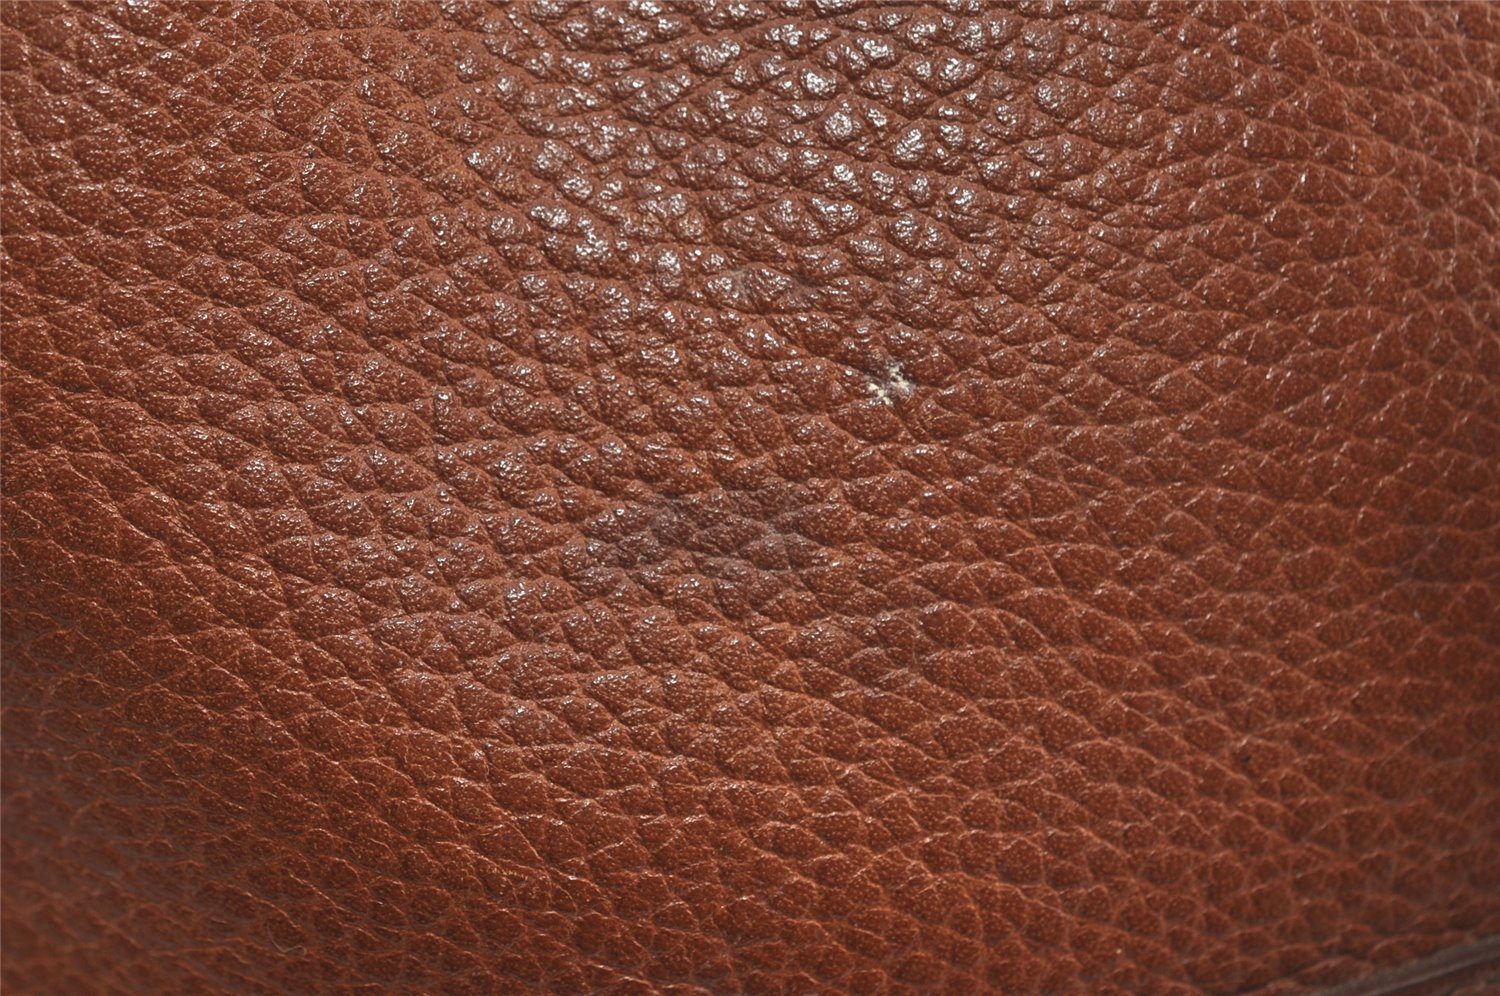 Authentic Burberrys Vintage Leather Drawstring Shoulder Cross Bag Brown 0951I